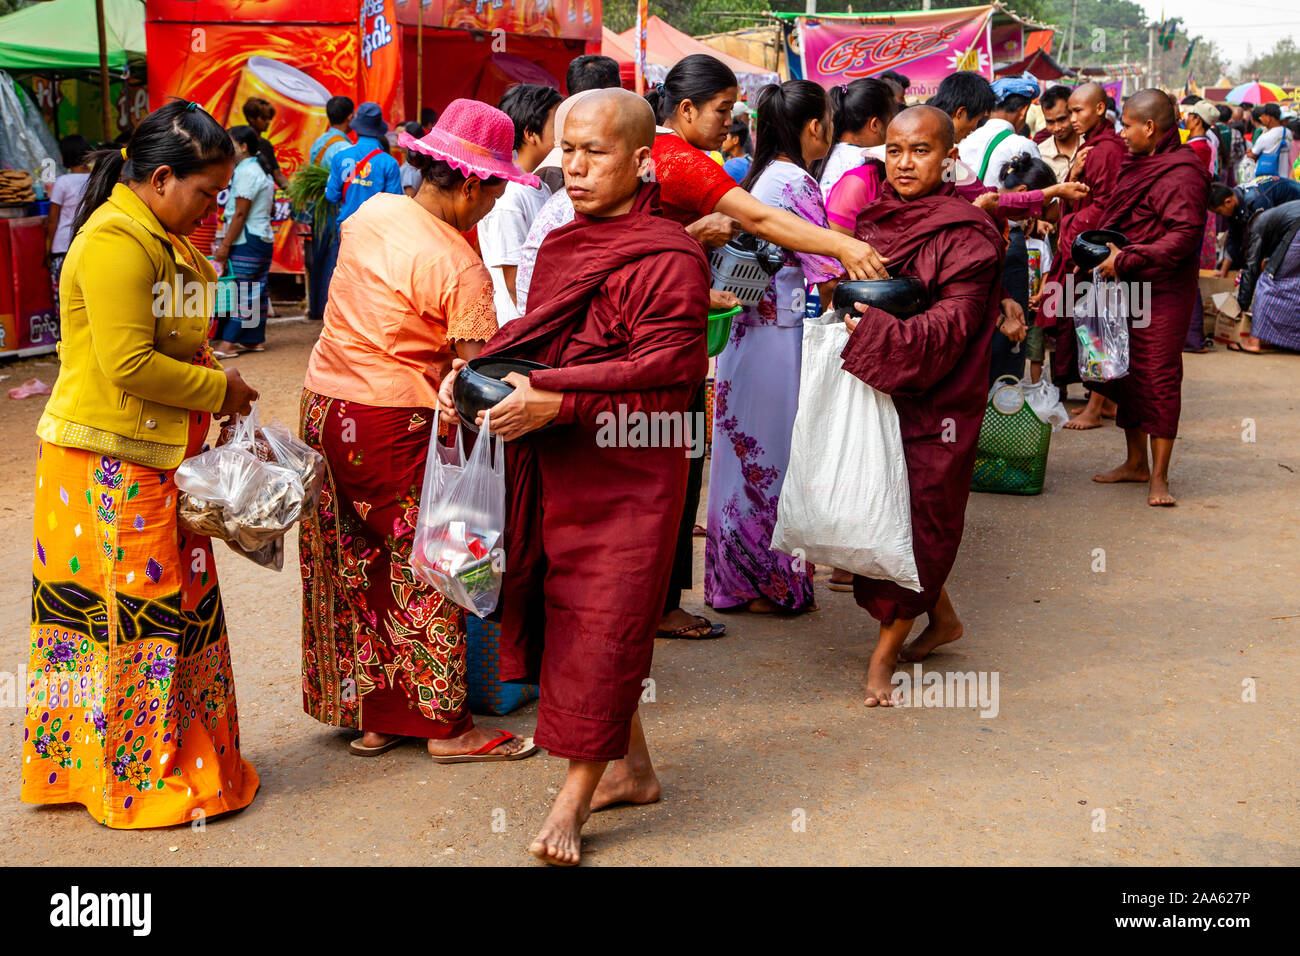 Monks Walk Down The Main Street In Pindaya Seeking Alms During The Pindaya Cave Festival, Pindaya, Shan State, Myanmar. Stock Photo